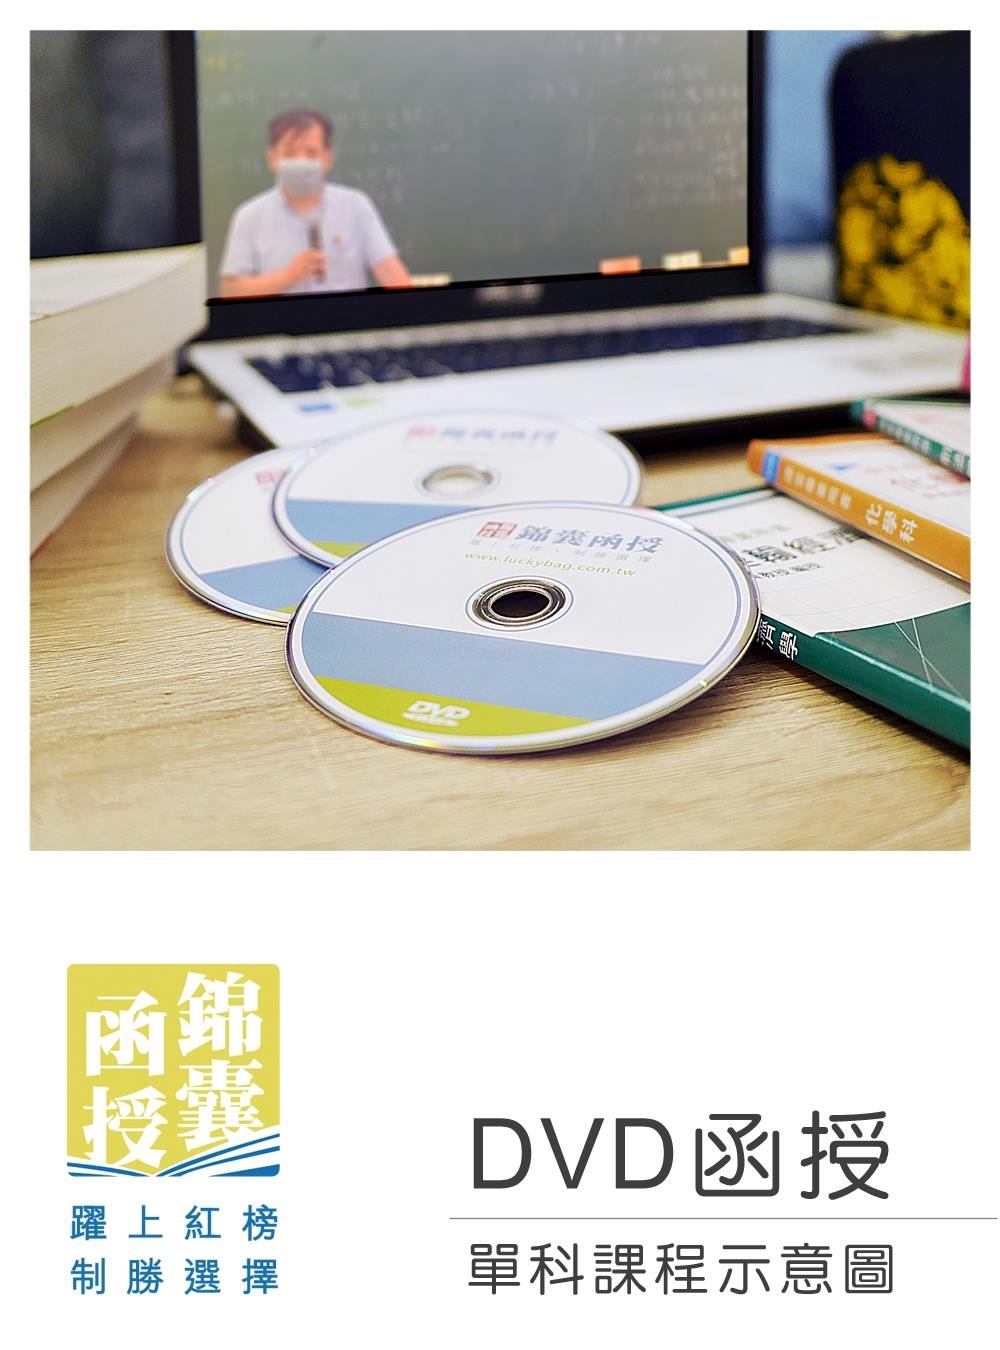 【DVD函授】資訊管理與資通(資訊)安全實務-單科課程(11...